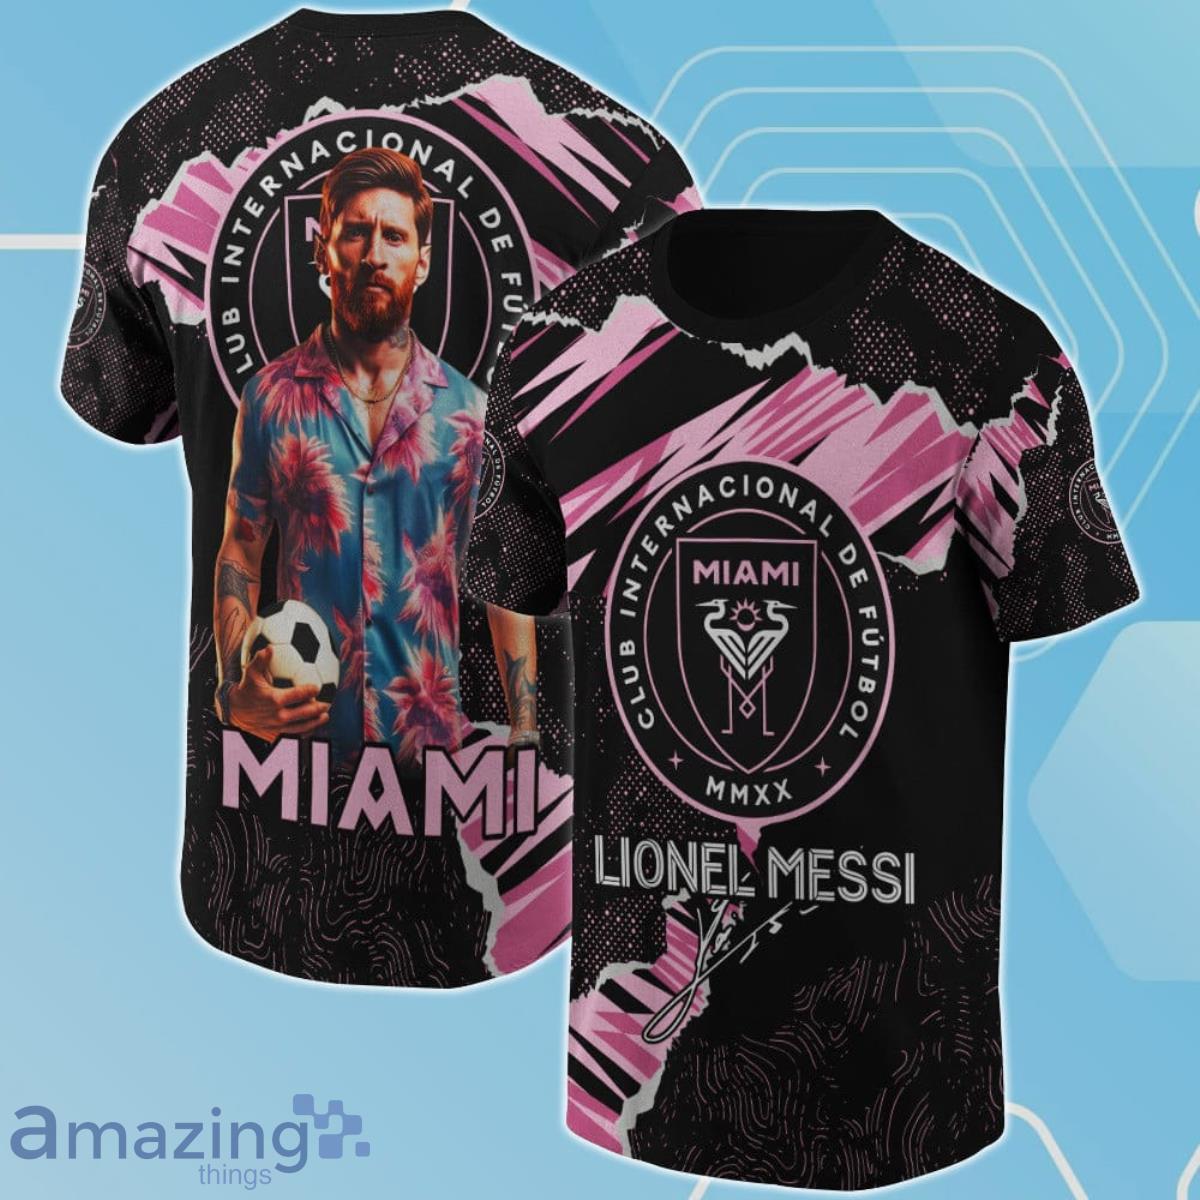 Lionel Messi Club Internacional De Futbol Miami 3D Shirt For Fans Product Photo 1